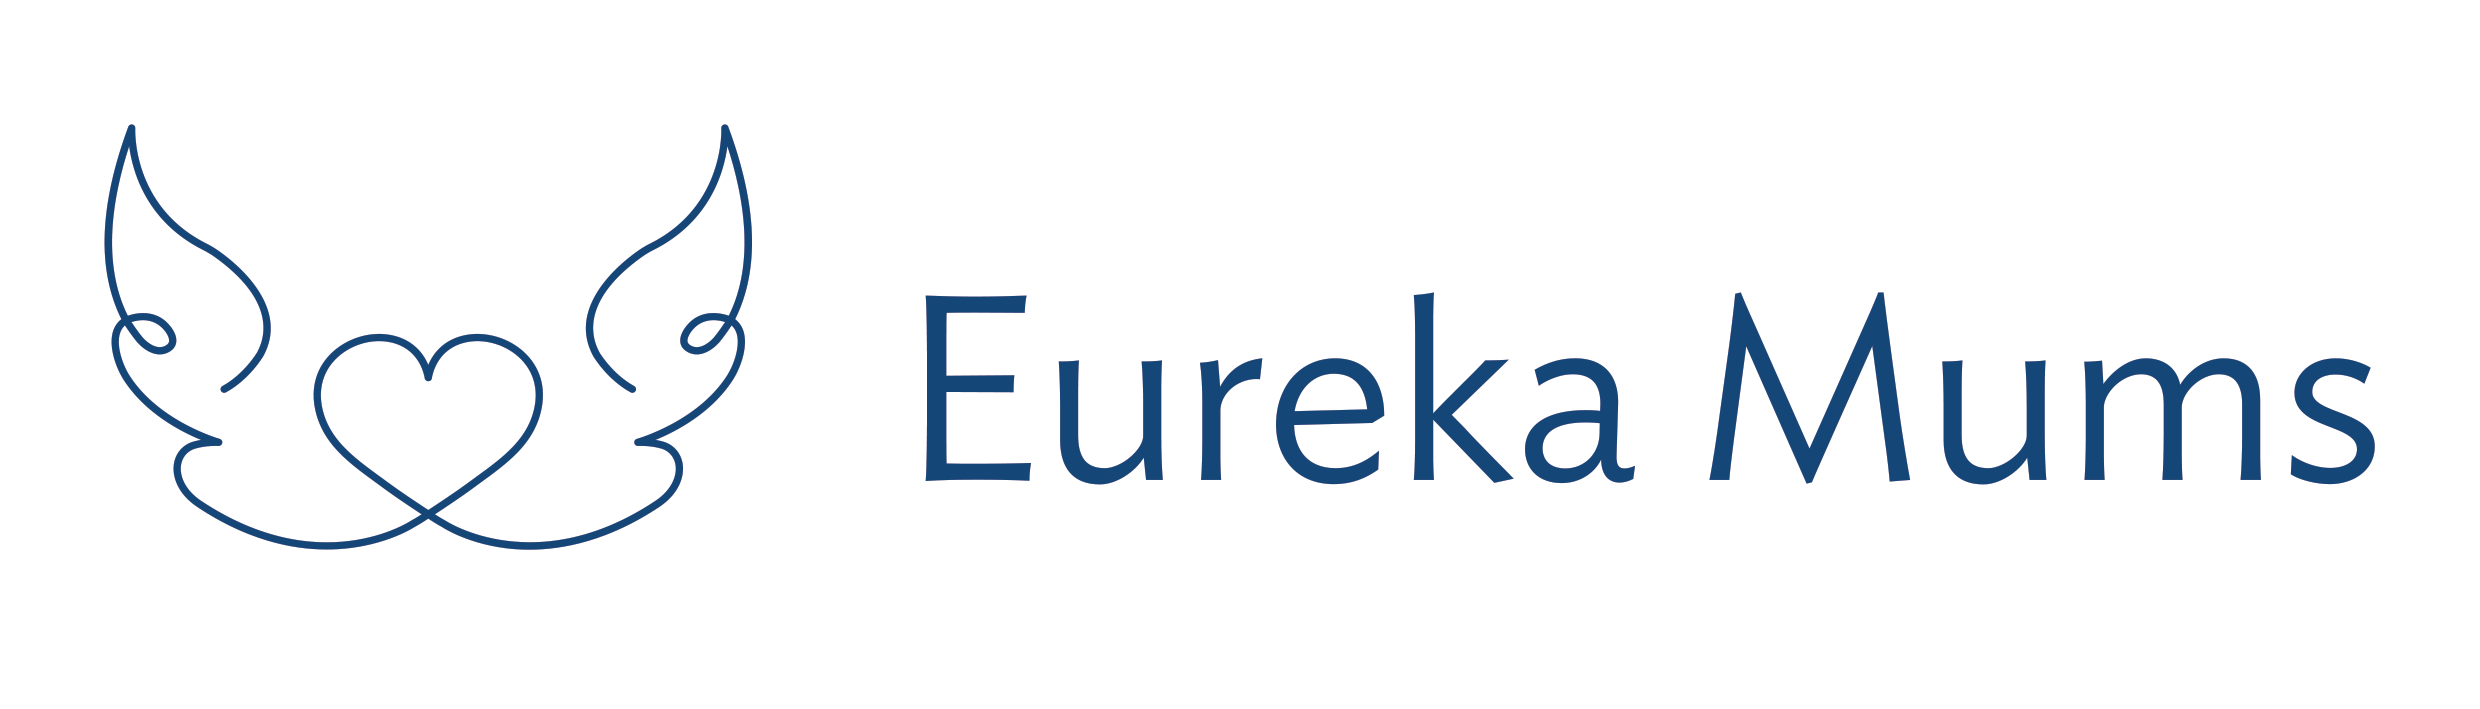 Eureka Mums logo